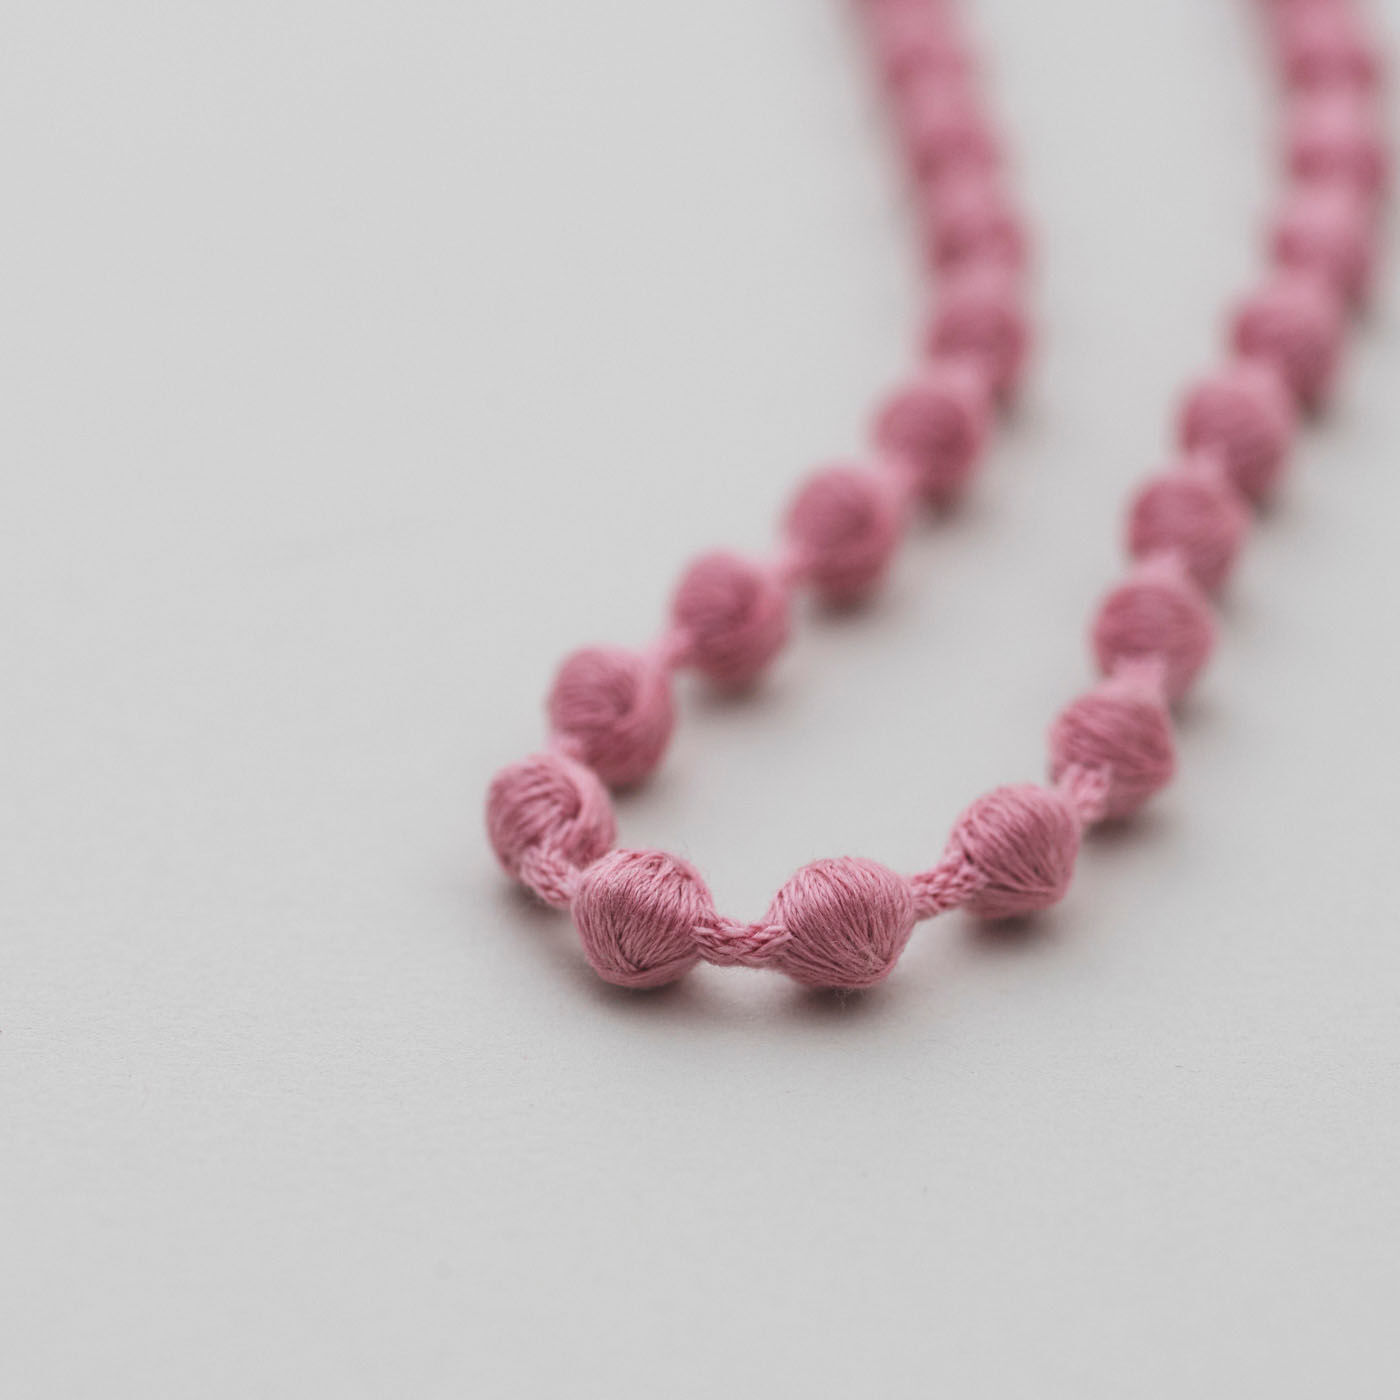 ＆Stories|群馬の刺繍工房が作った 糸の宝石のグラスコード〈ミスティーピンク〉|職人技と最先端の技術から生まれた球体刺繍は、宝石のような美しさ。